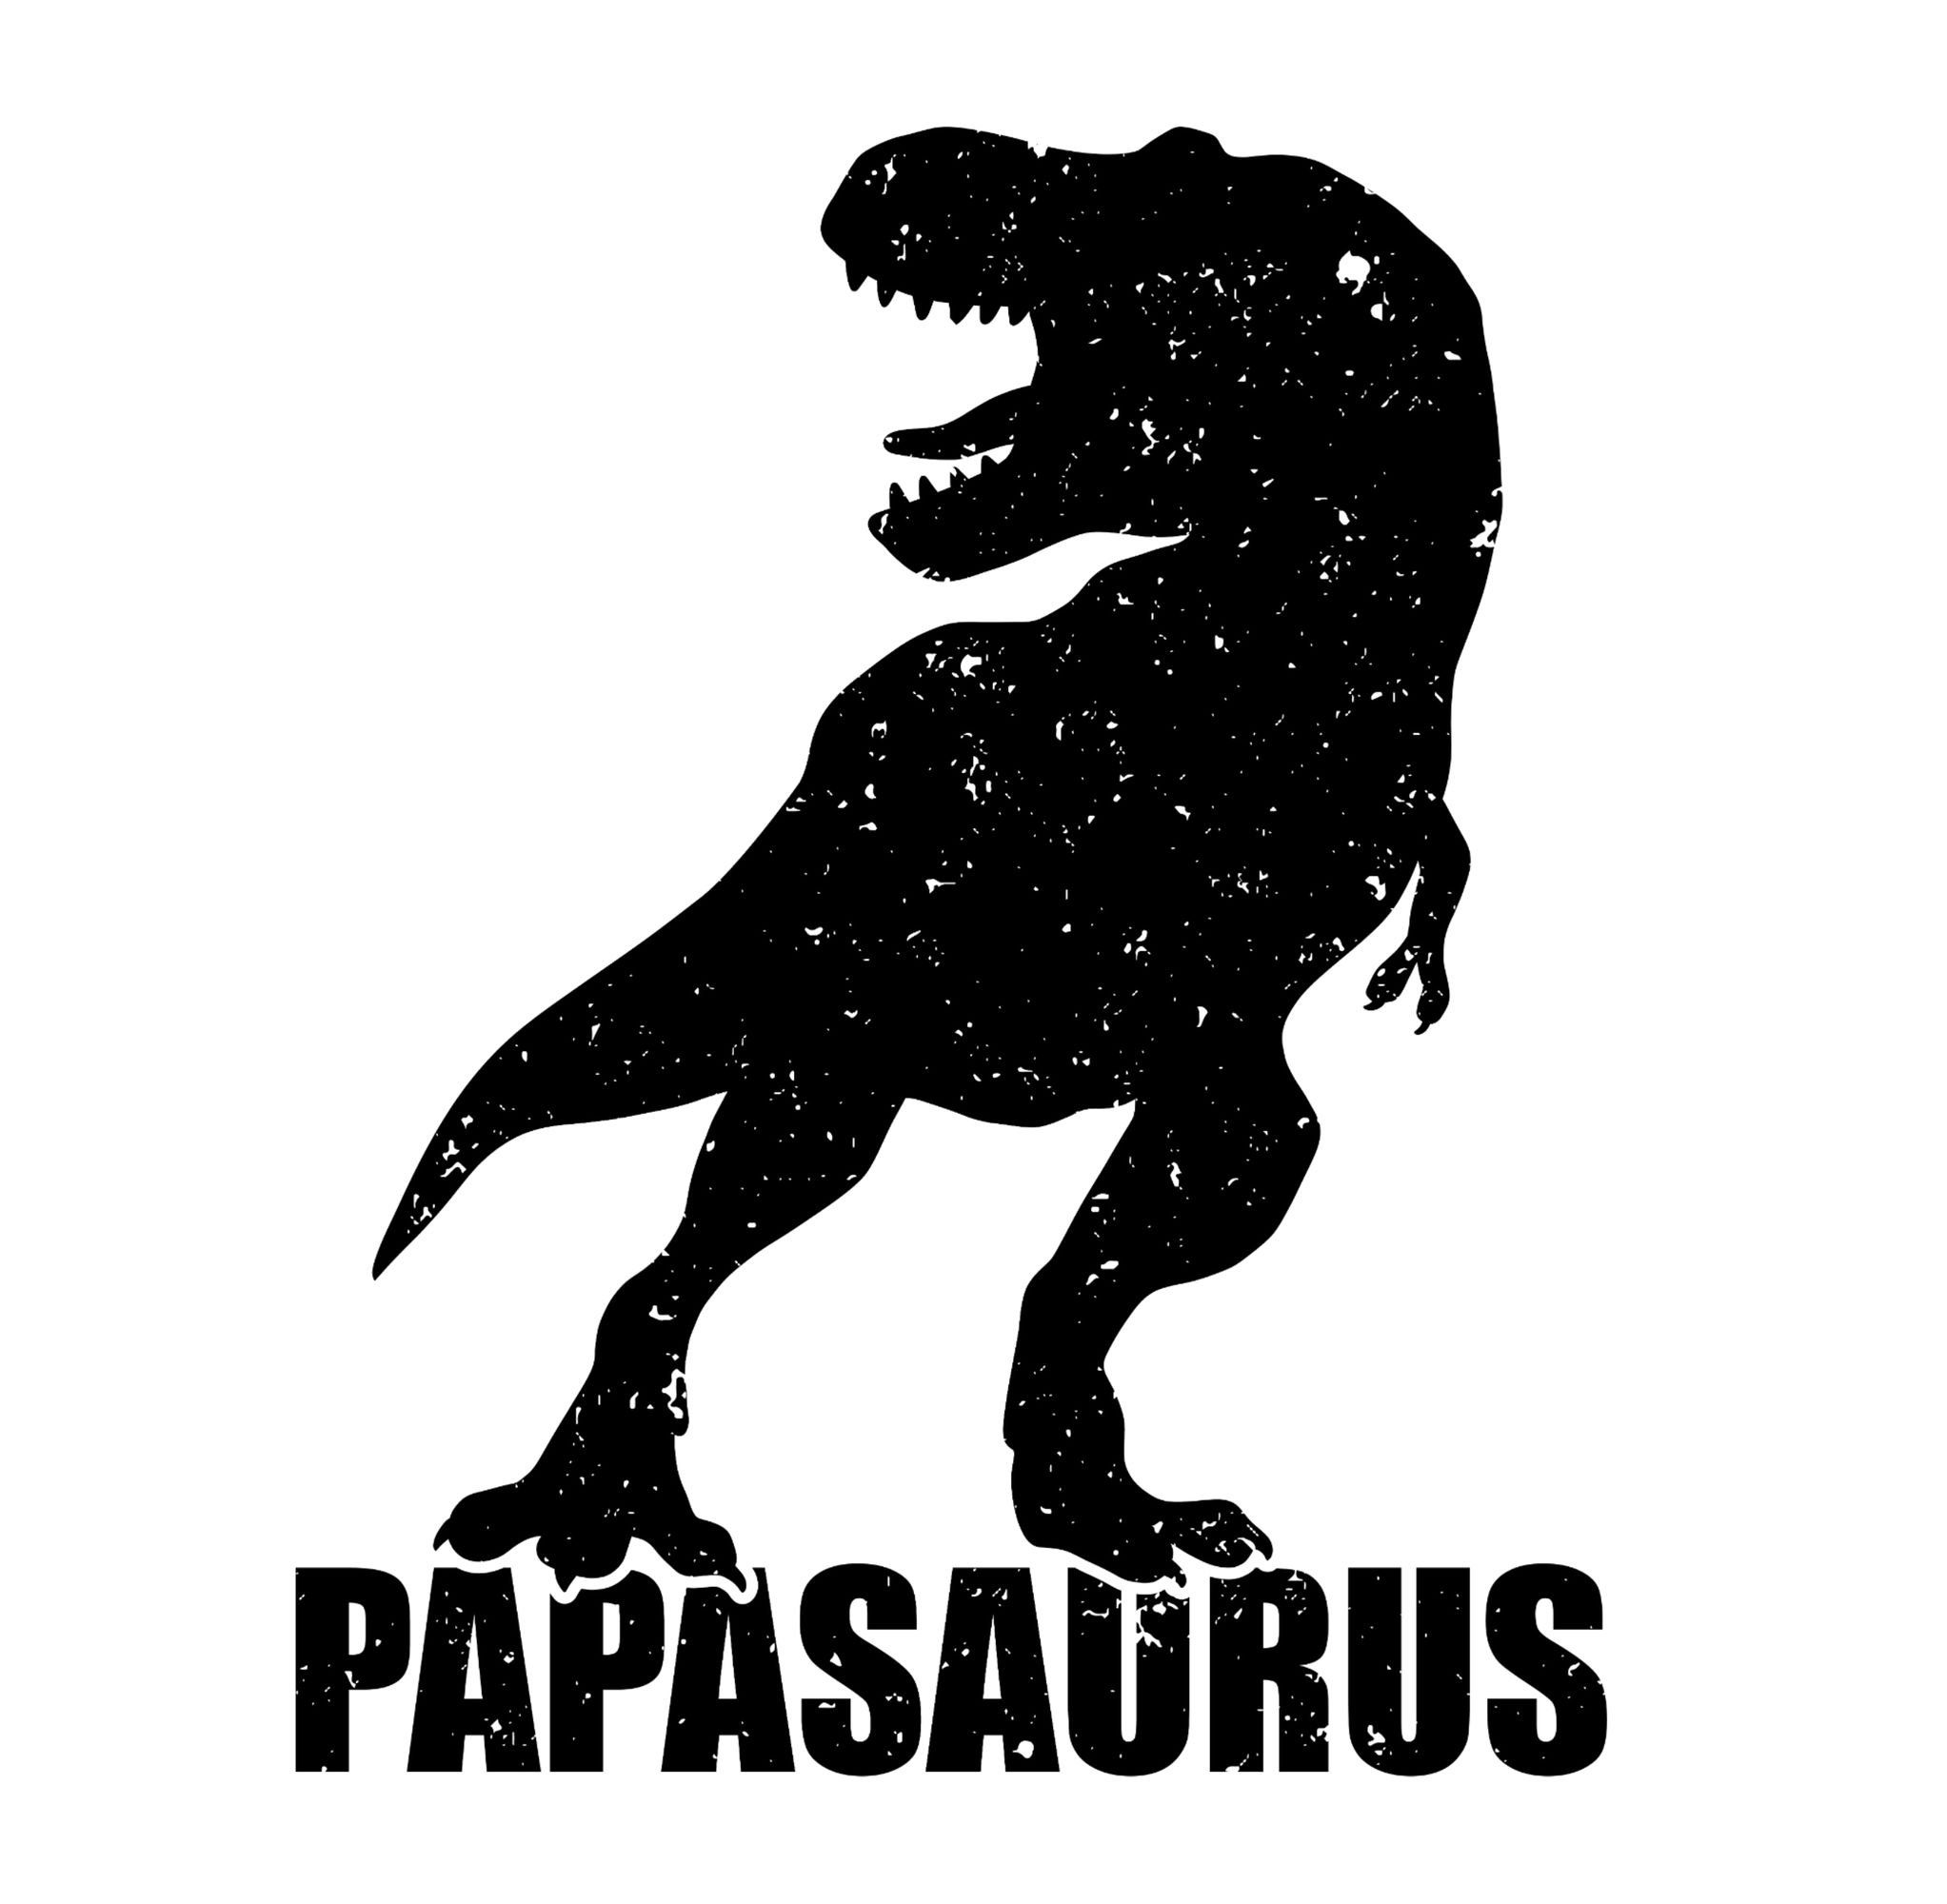 Grün Army Vatertag für Papasaurus Shirtracer 02 Papa T-Rex mit T-Shirt Geschenk